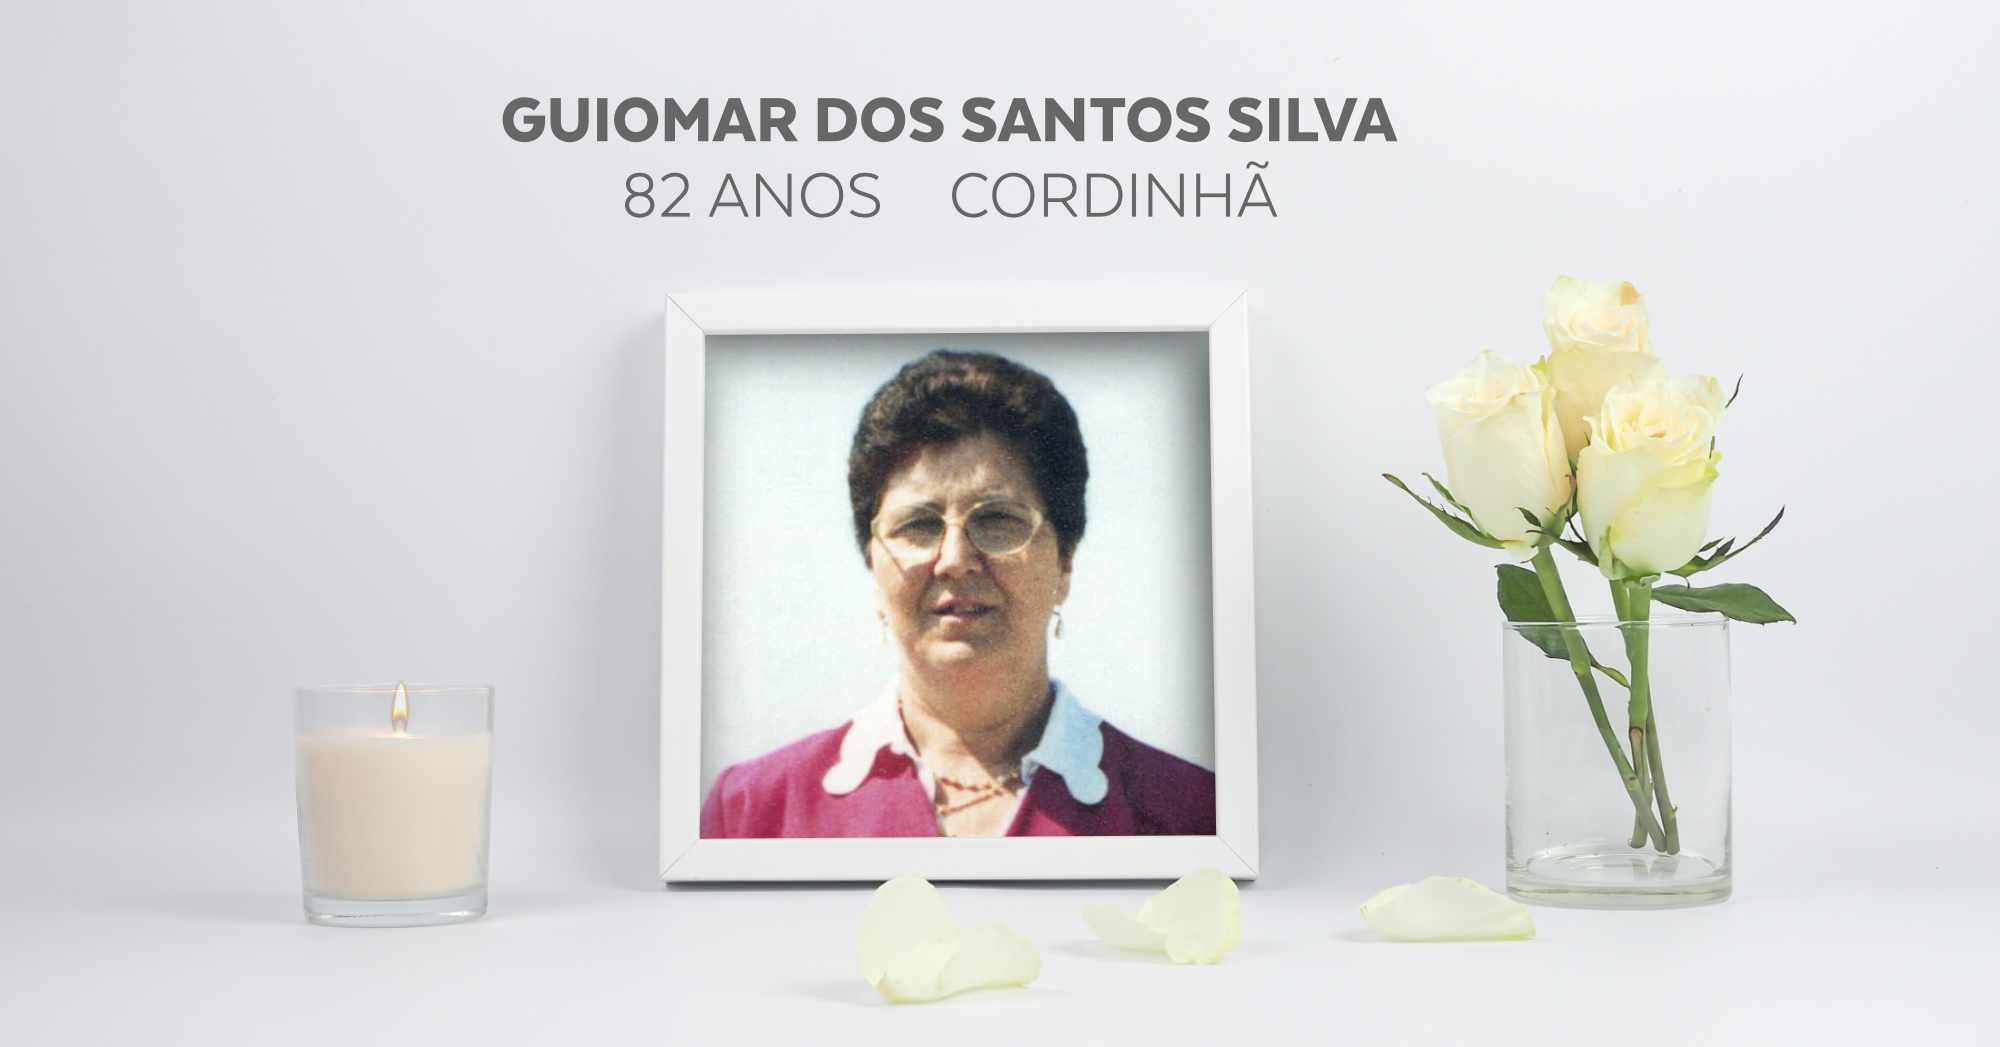 Guiomar dos Santos Silva